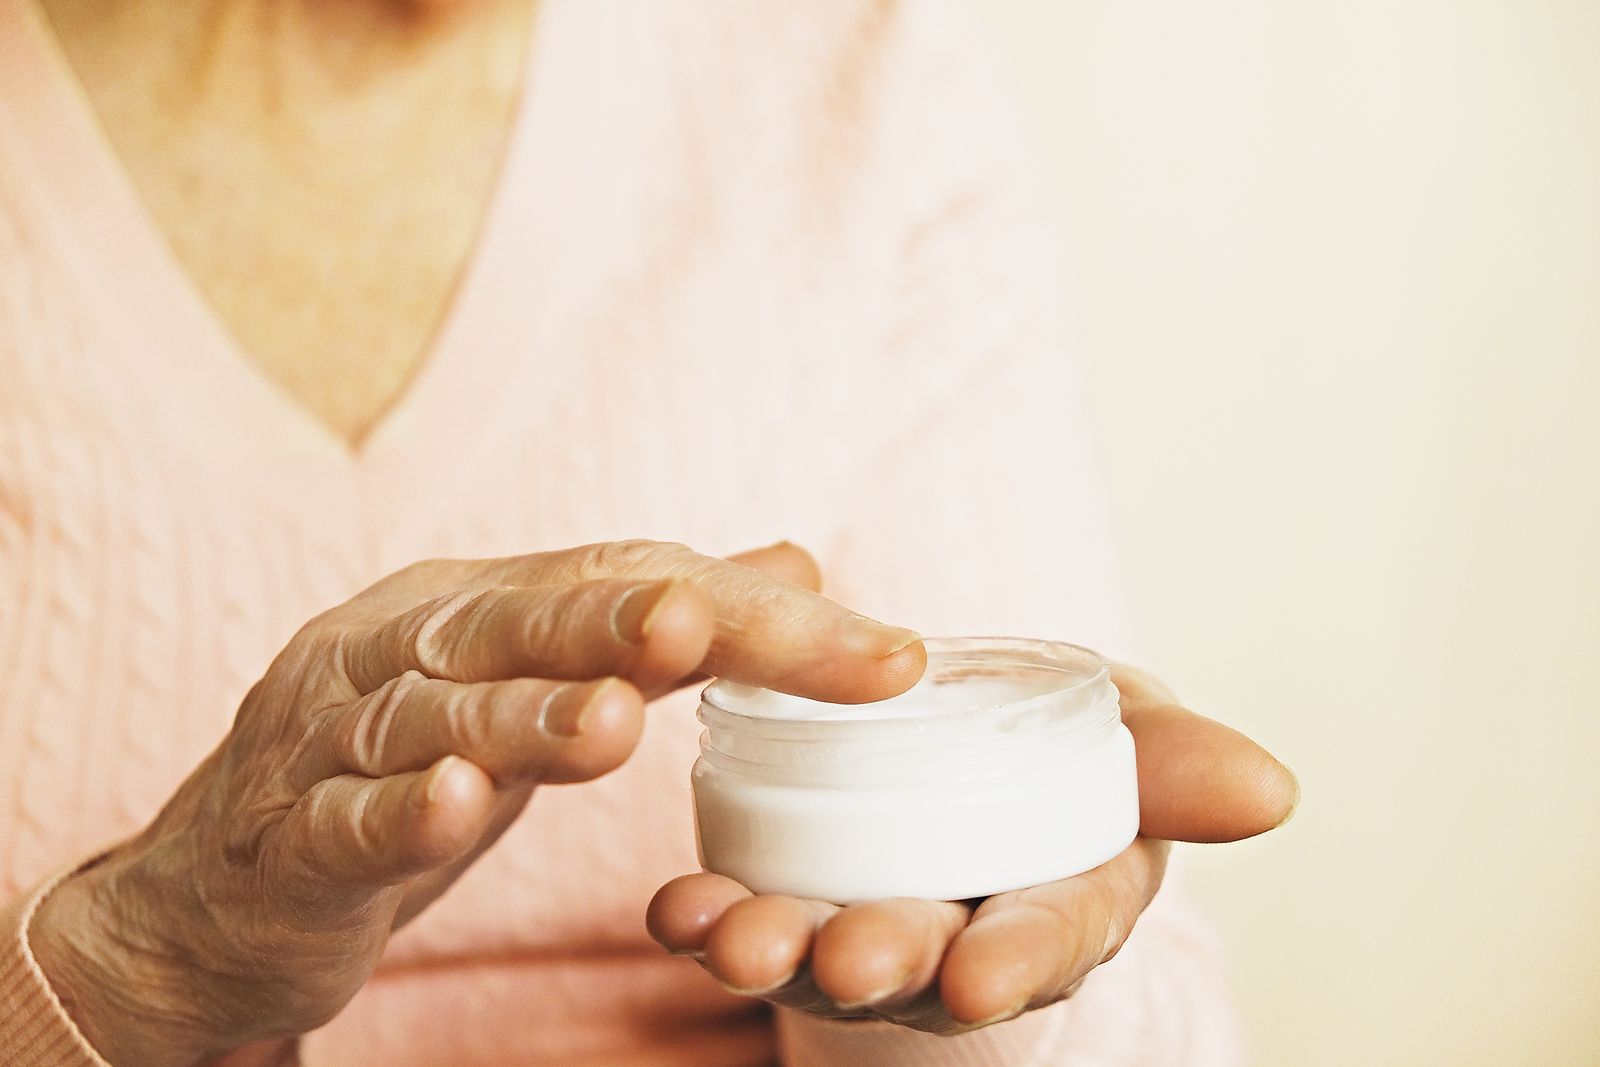 Cuidado con el uso de algunas cremas y cosméticos: podrían provocar erupciones y lesiones cutáneas